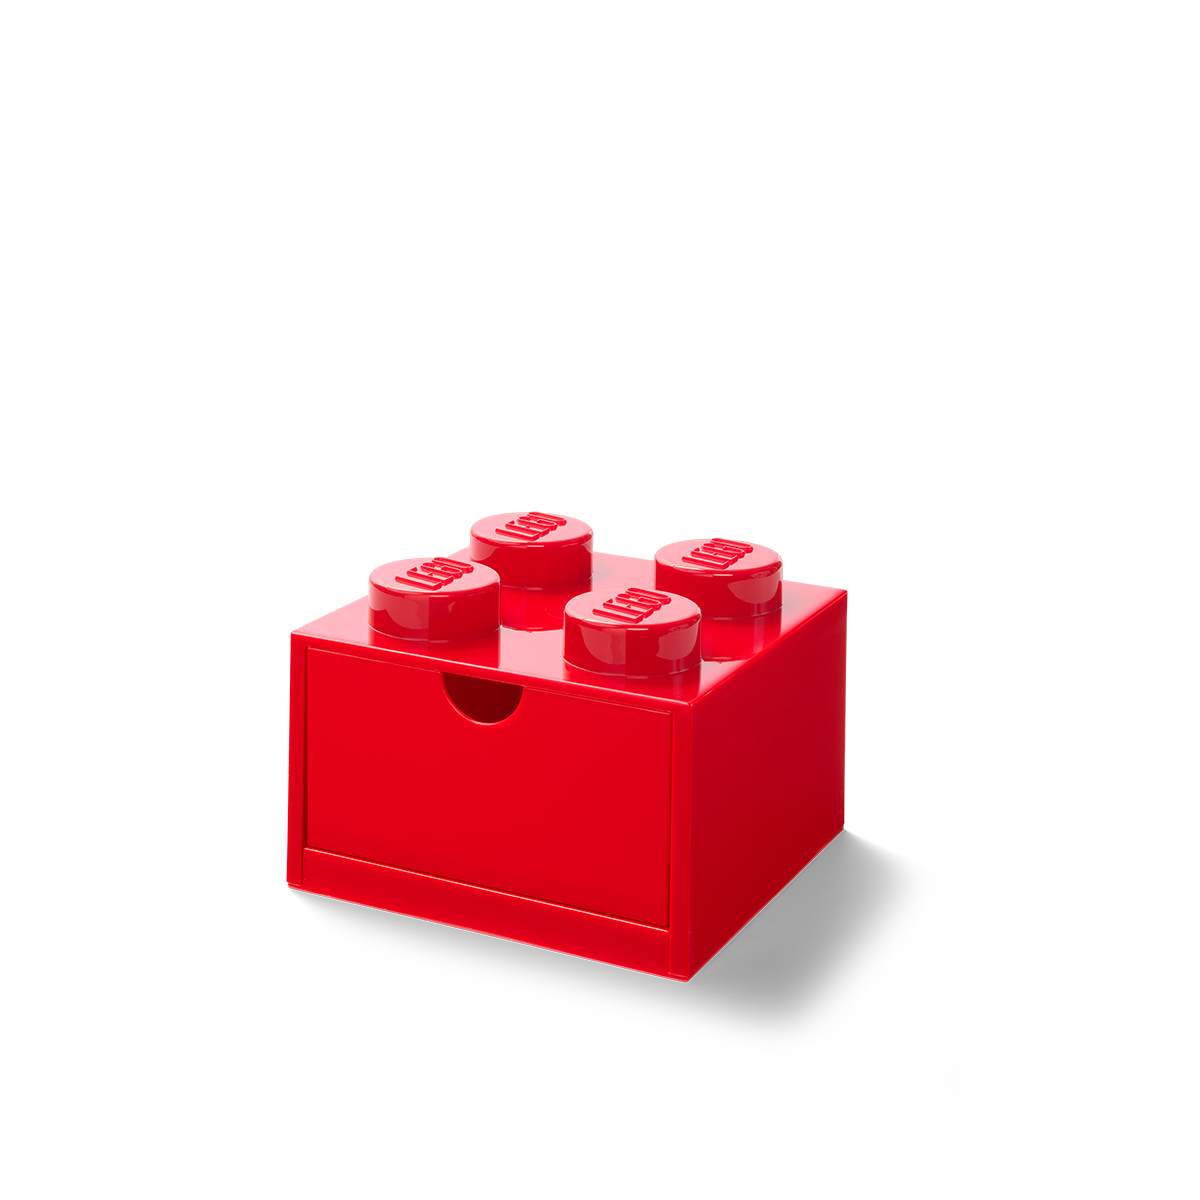 Chambres d'enfants : ranger les briques de Lego • Plumetis Magazine